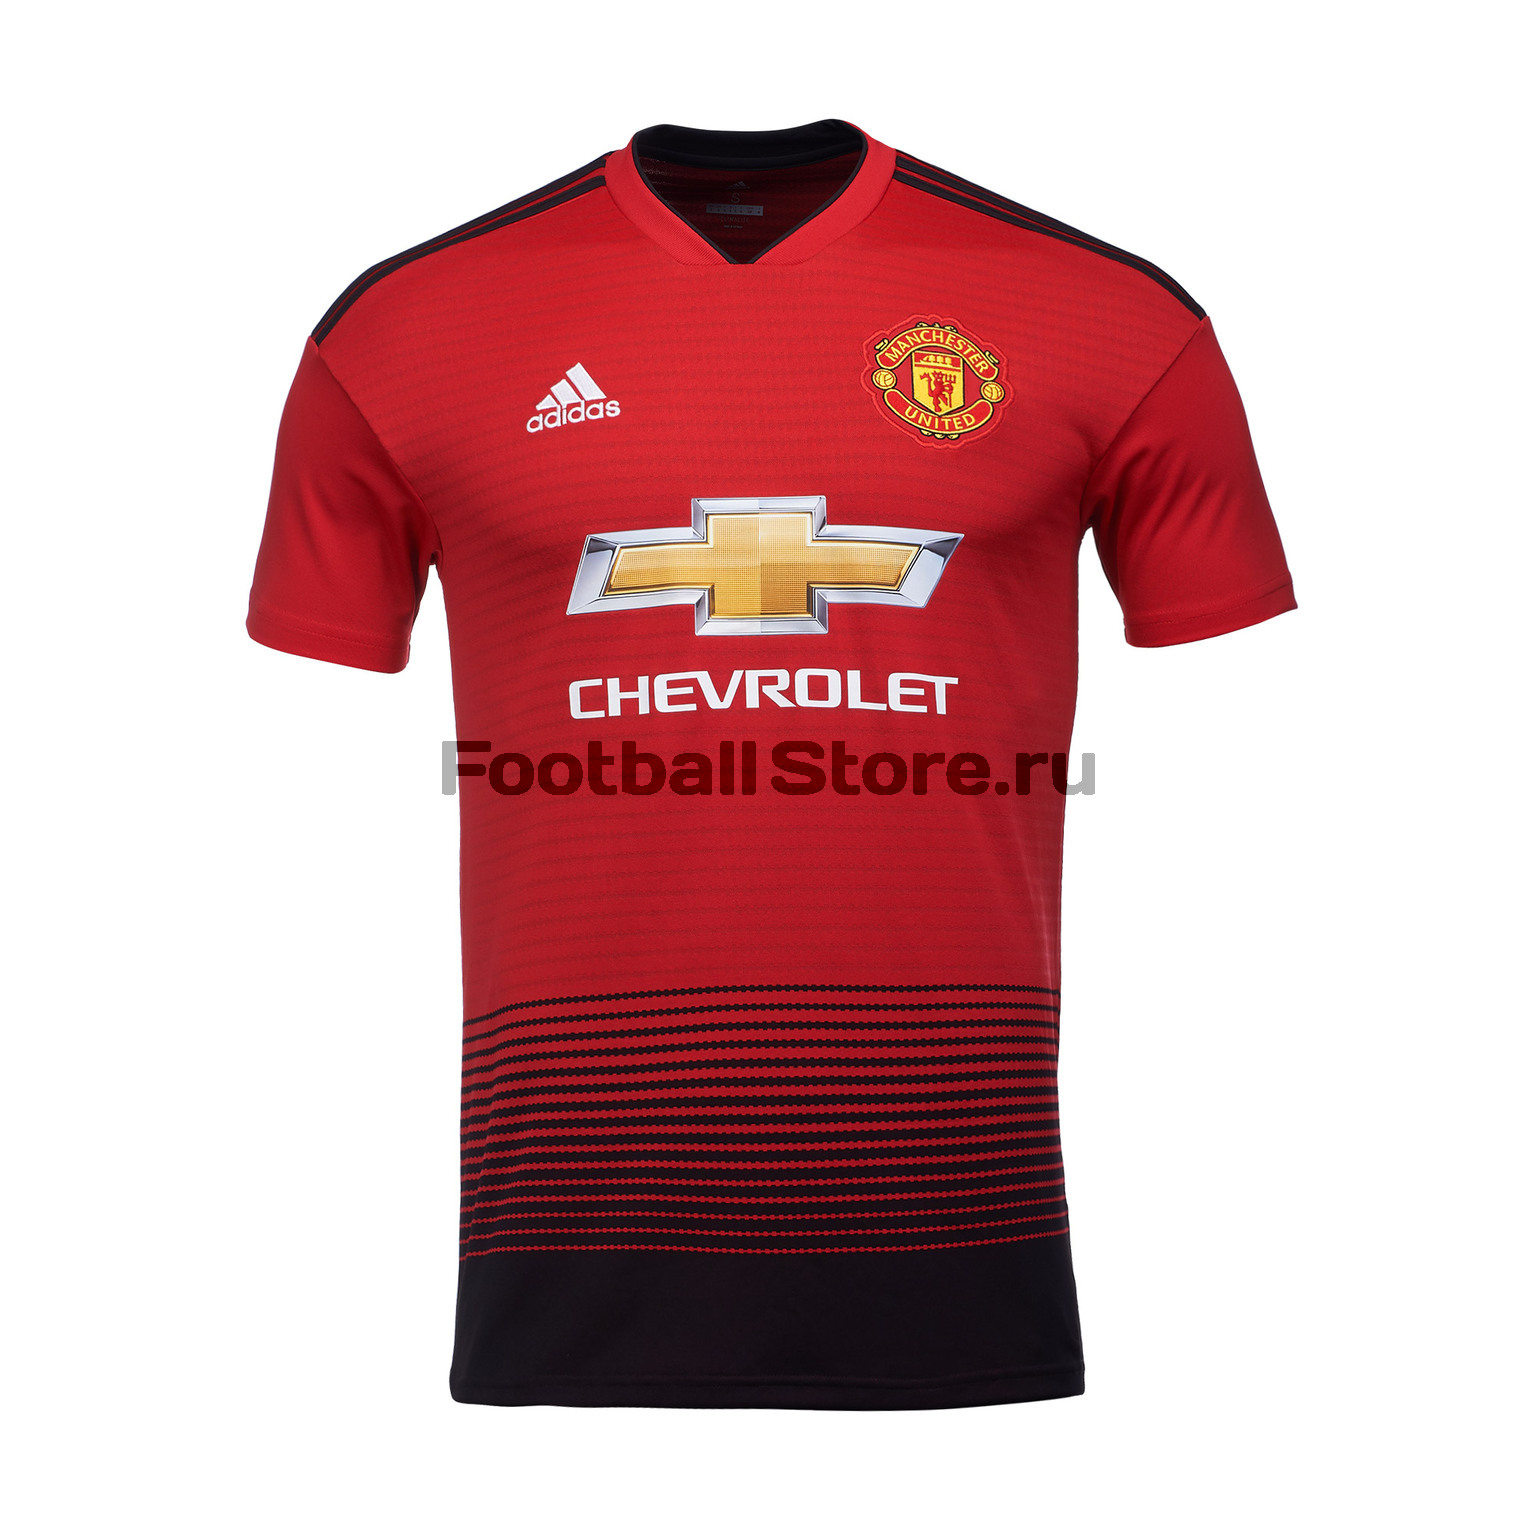 Футболка домашняя игровая Adidas Manchester United 2018/19